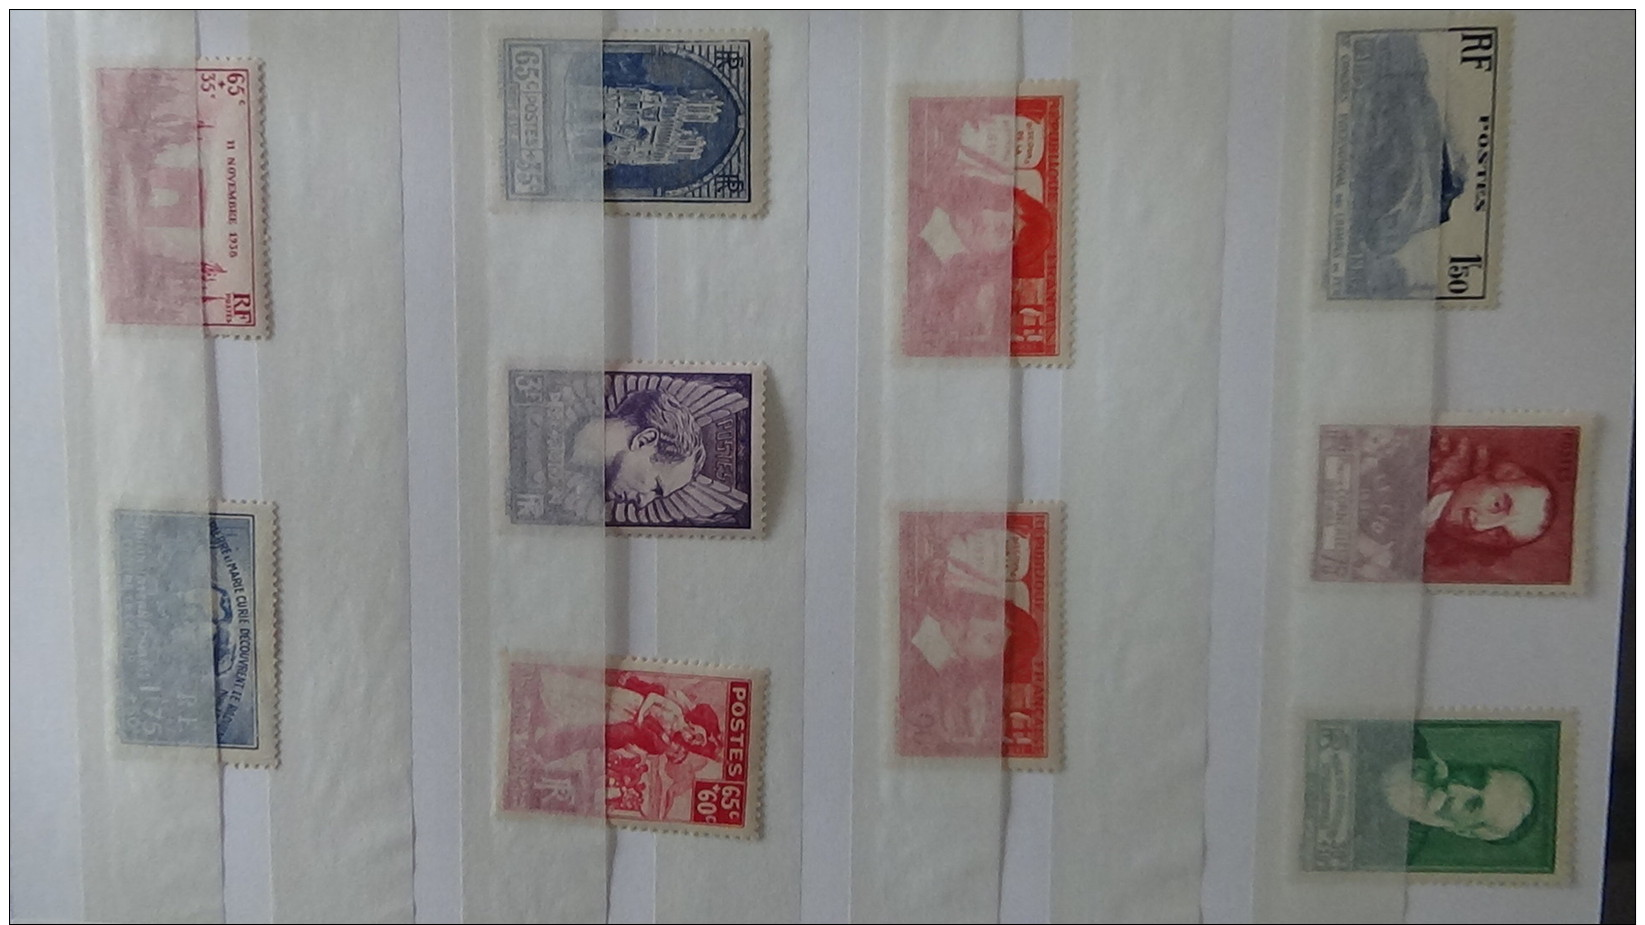 A Belle colection de timbres ** de France années 40. Cote très sympa. A saisir !!!